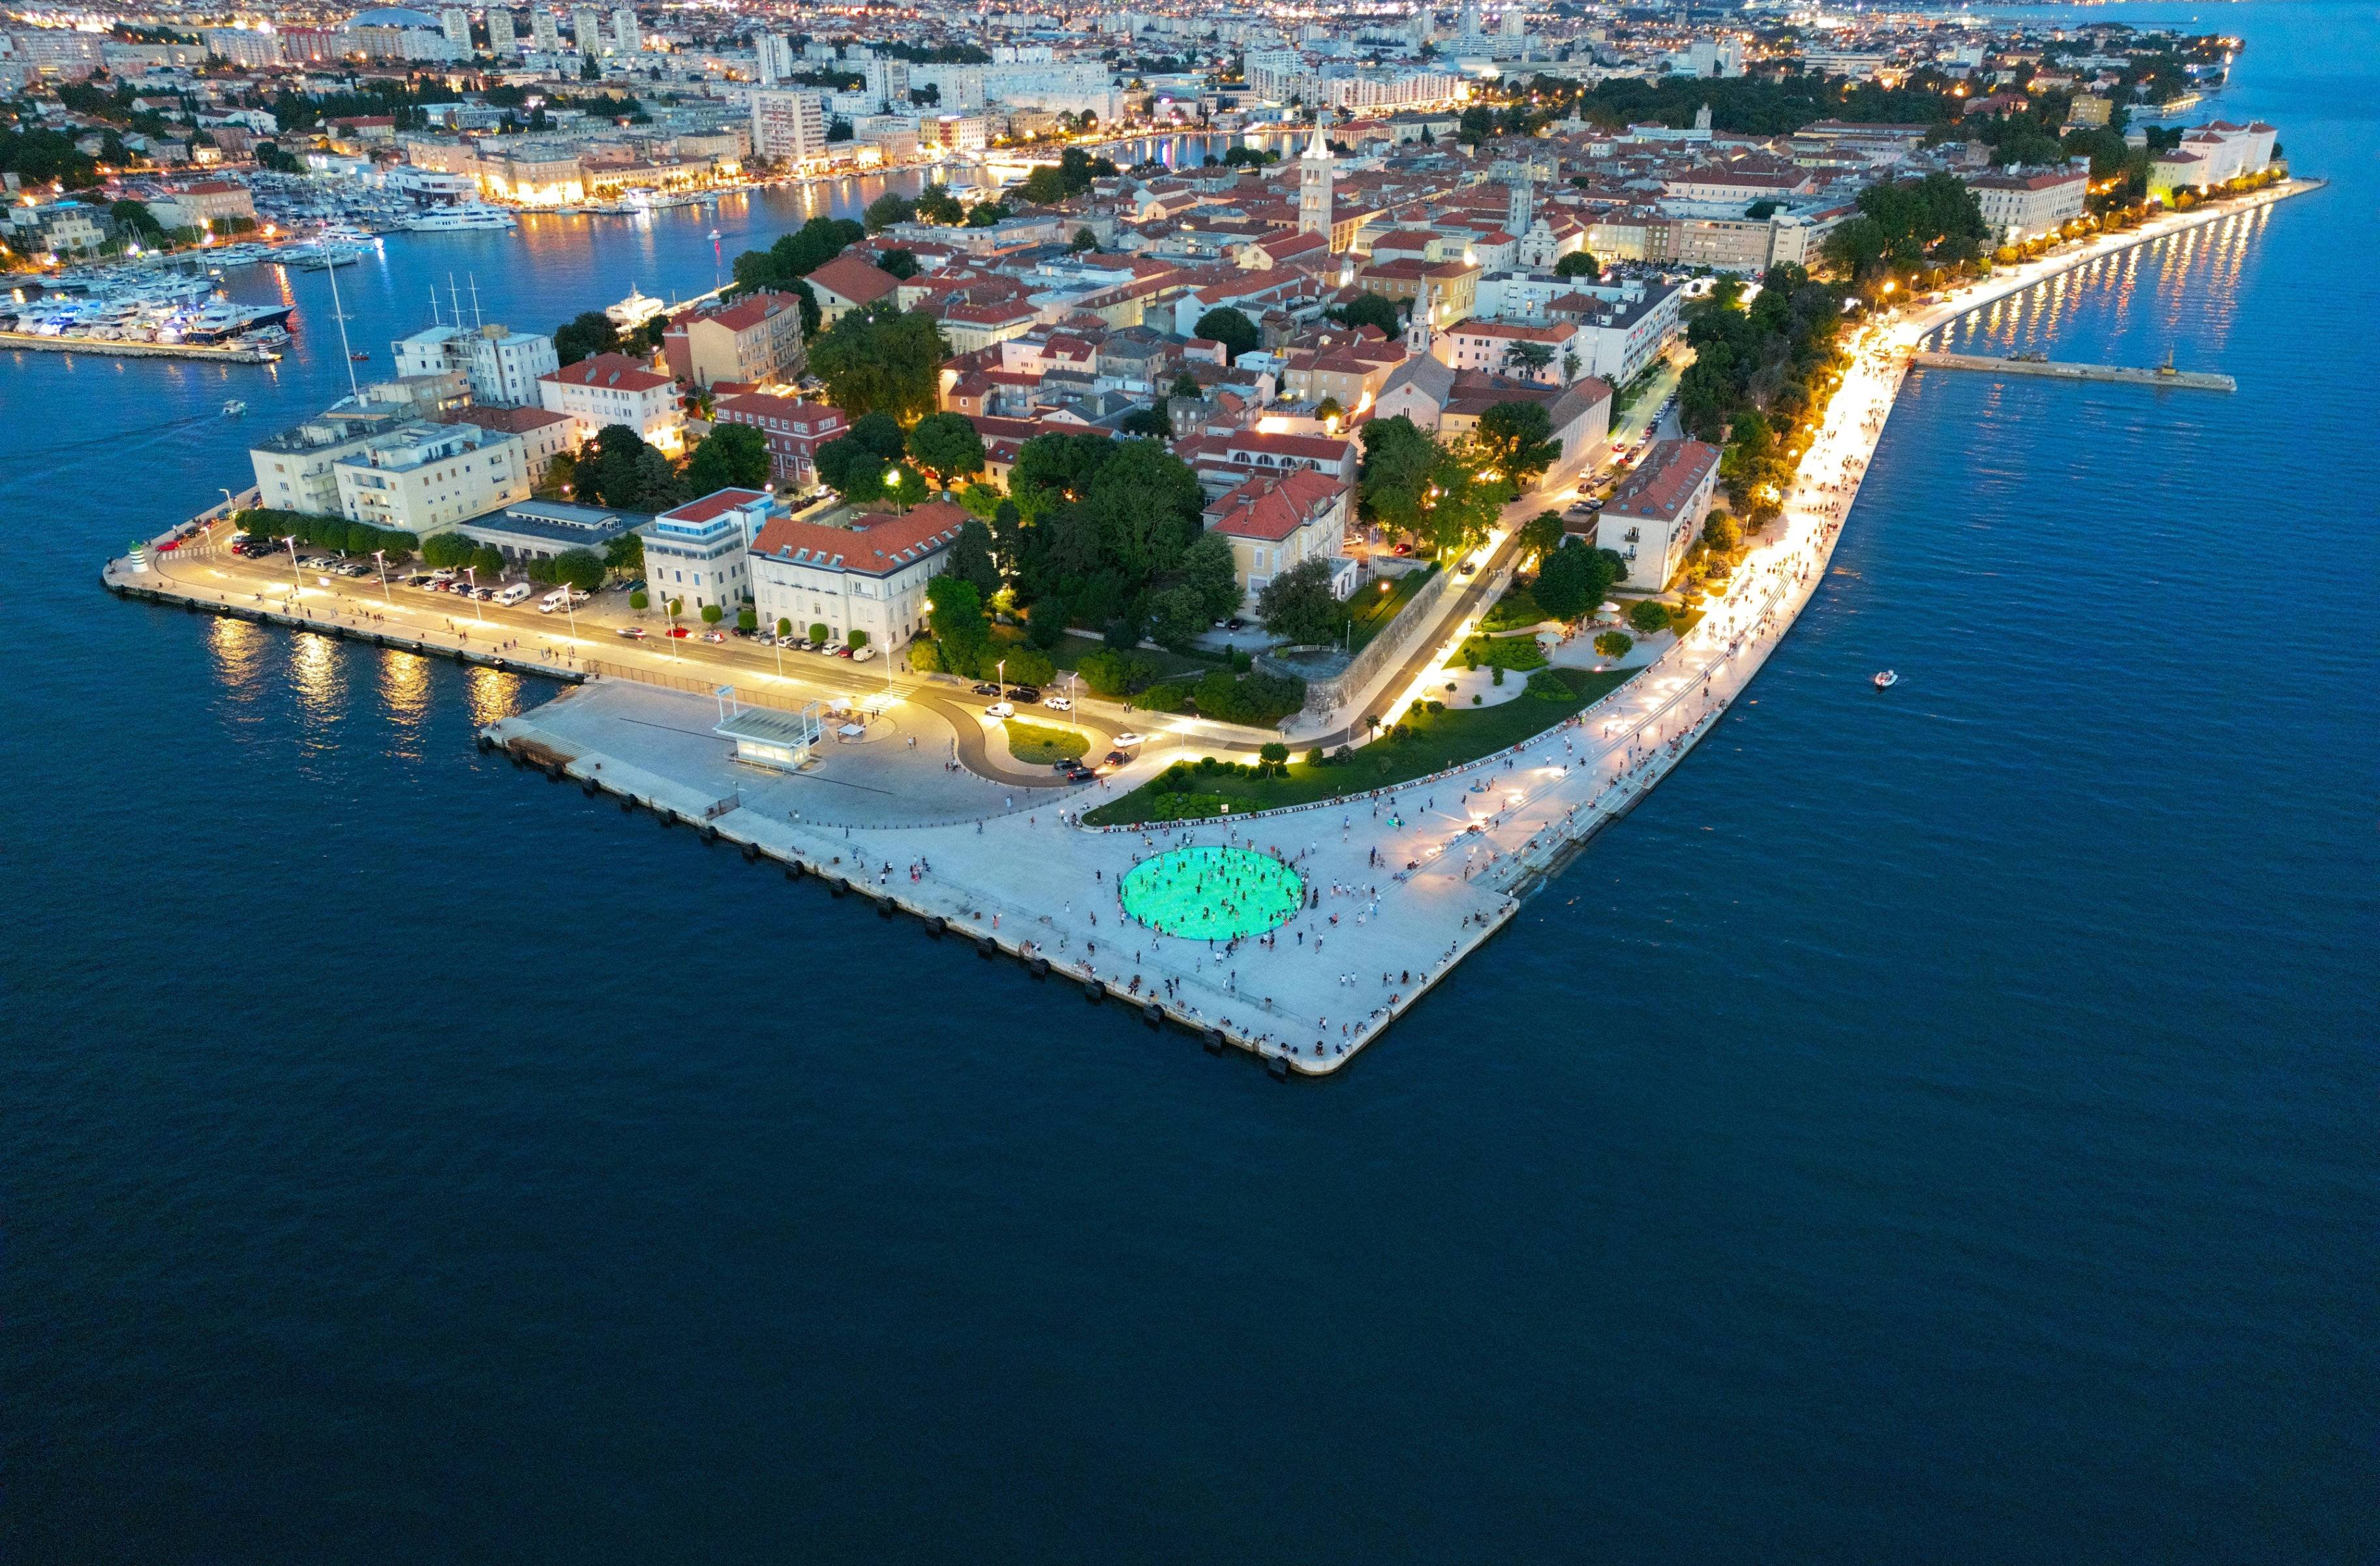 Descubriendo Zadar, Tesoros Históricos a Orillas del Adriático